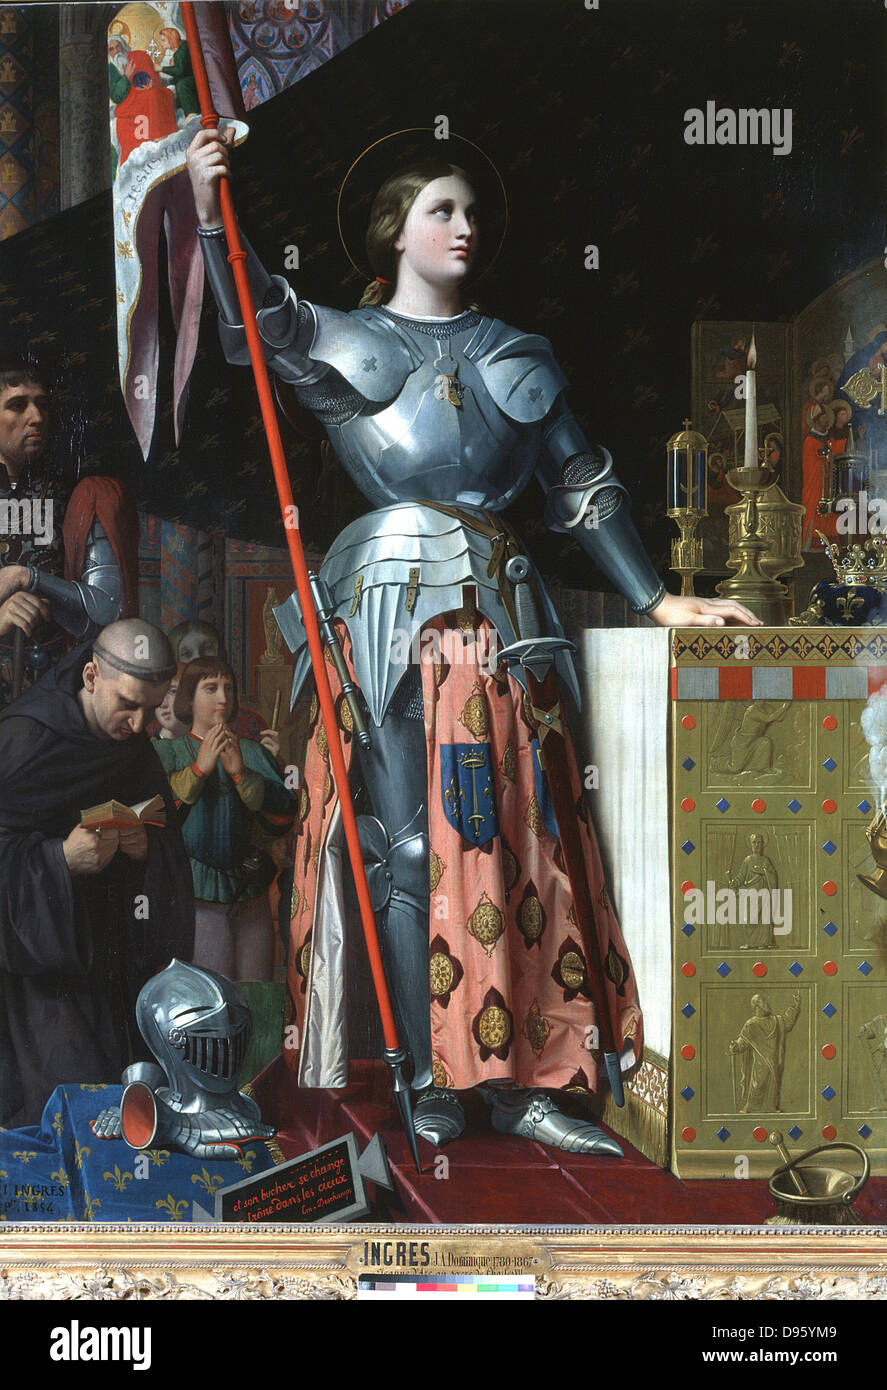 Jeanne d'Arc au sacre de Charles VII dans la Cathédrale de Reims. Jean Auguste Dominique Ingres (1780-1867) peintre classique français. Huile sur toile (1854). Louvre, Paris. Banque D'Images